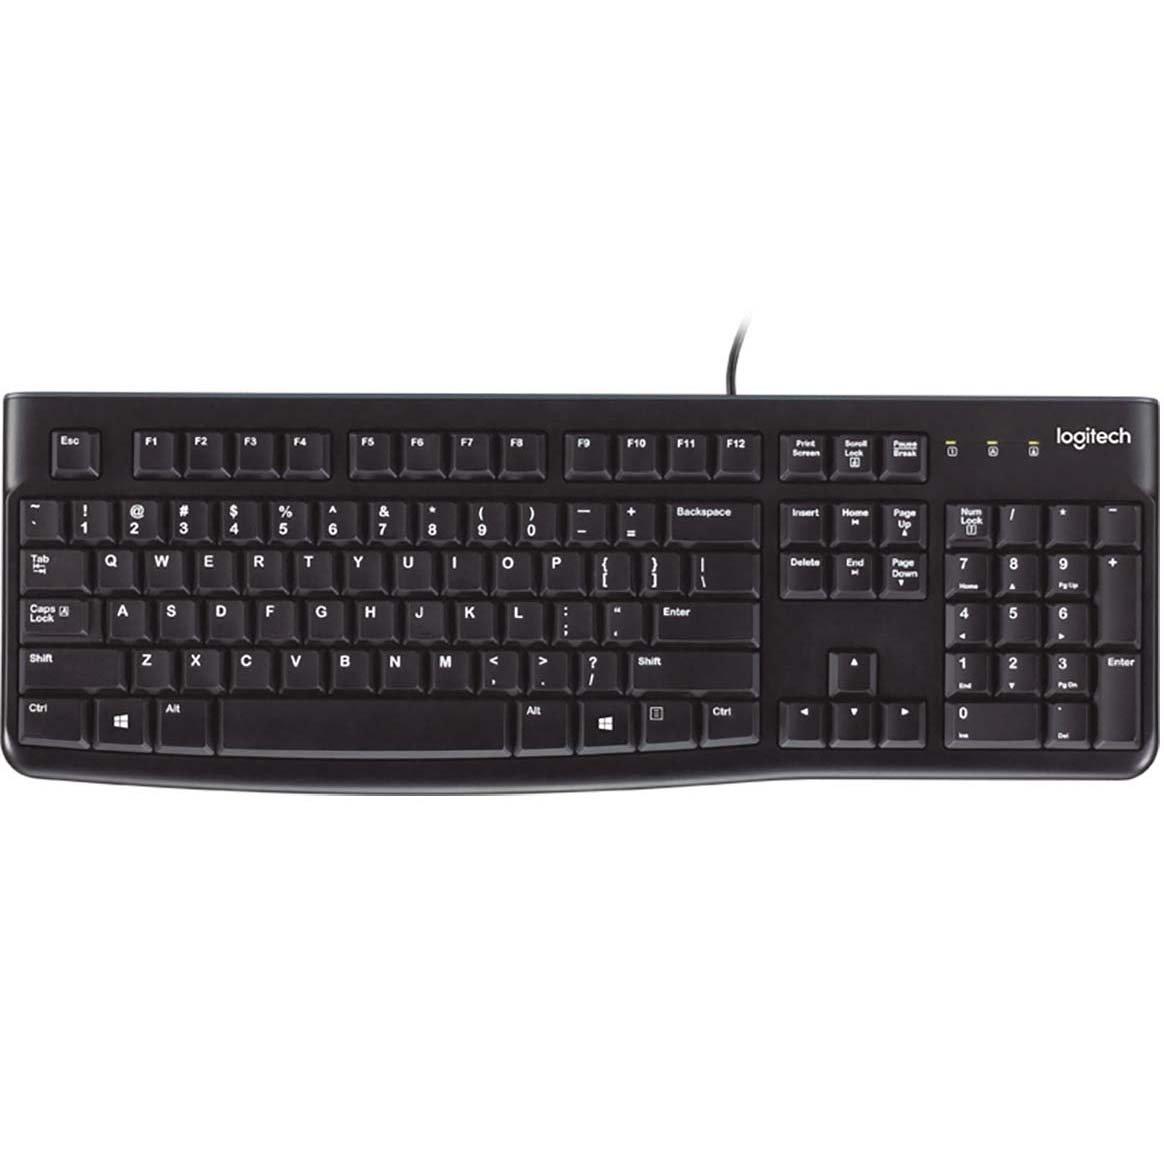 Logitech K120 USB Desktop Wired Keyboard for $8.99